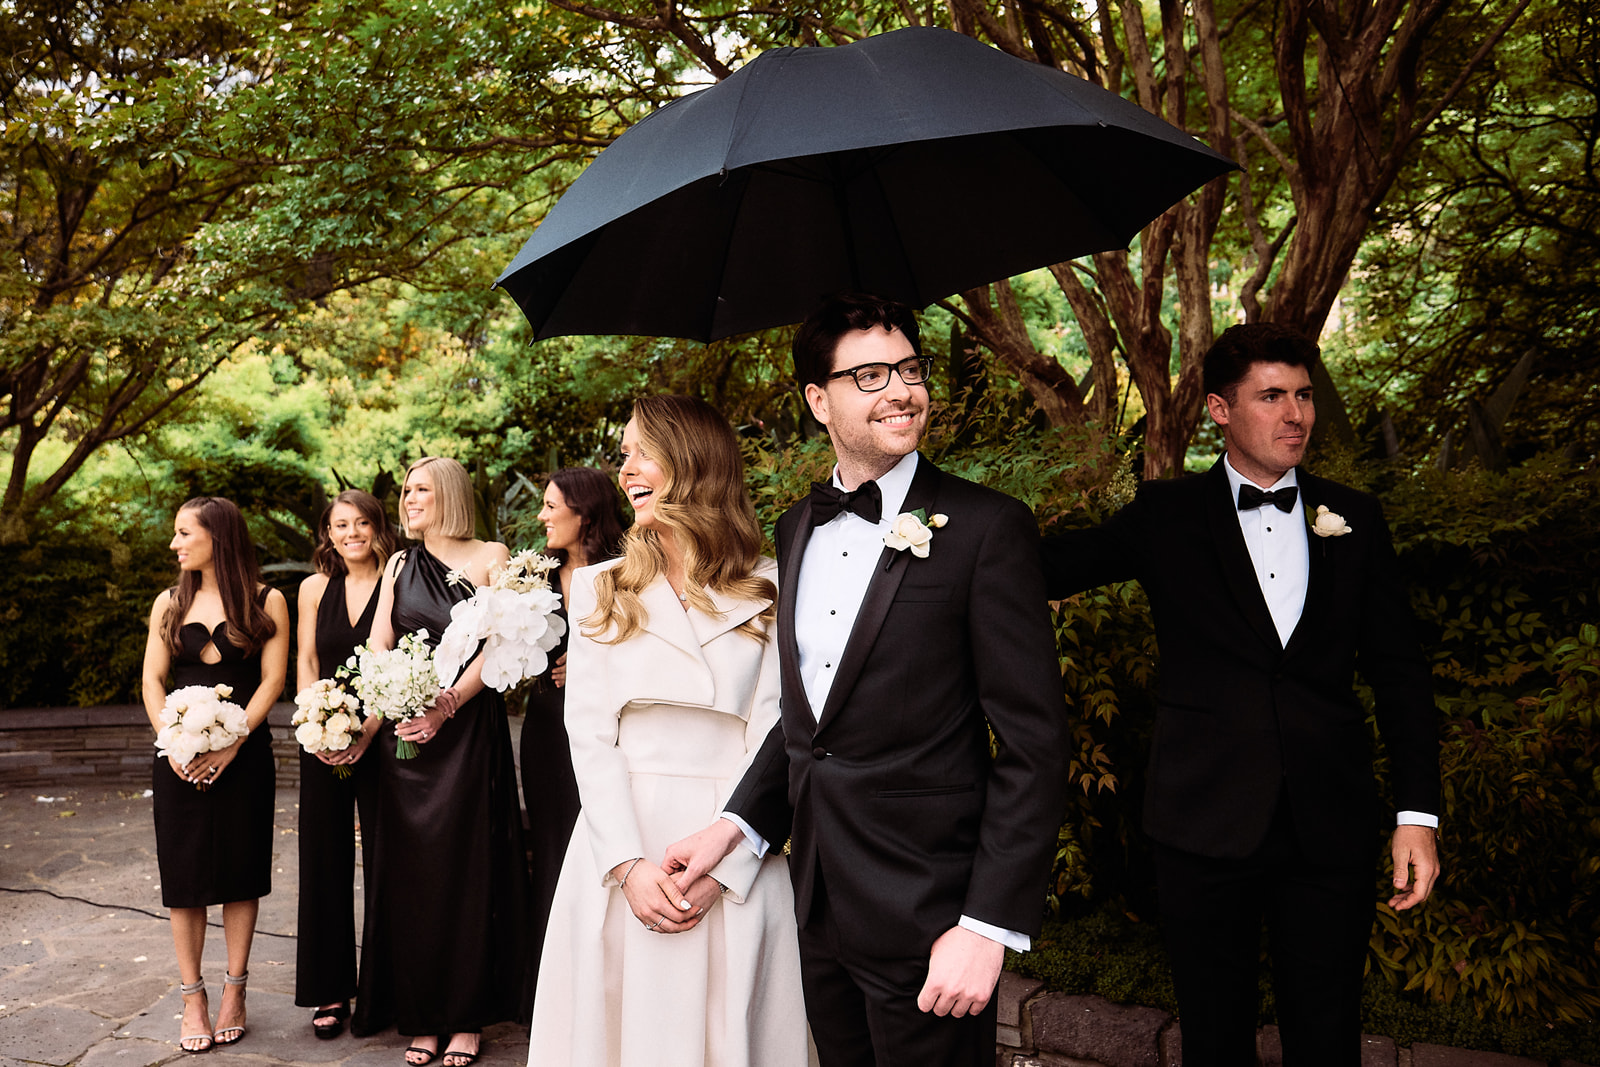 Rainy wedding ceremony